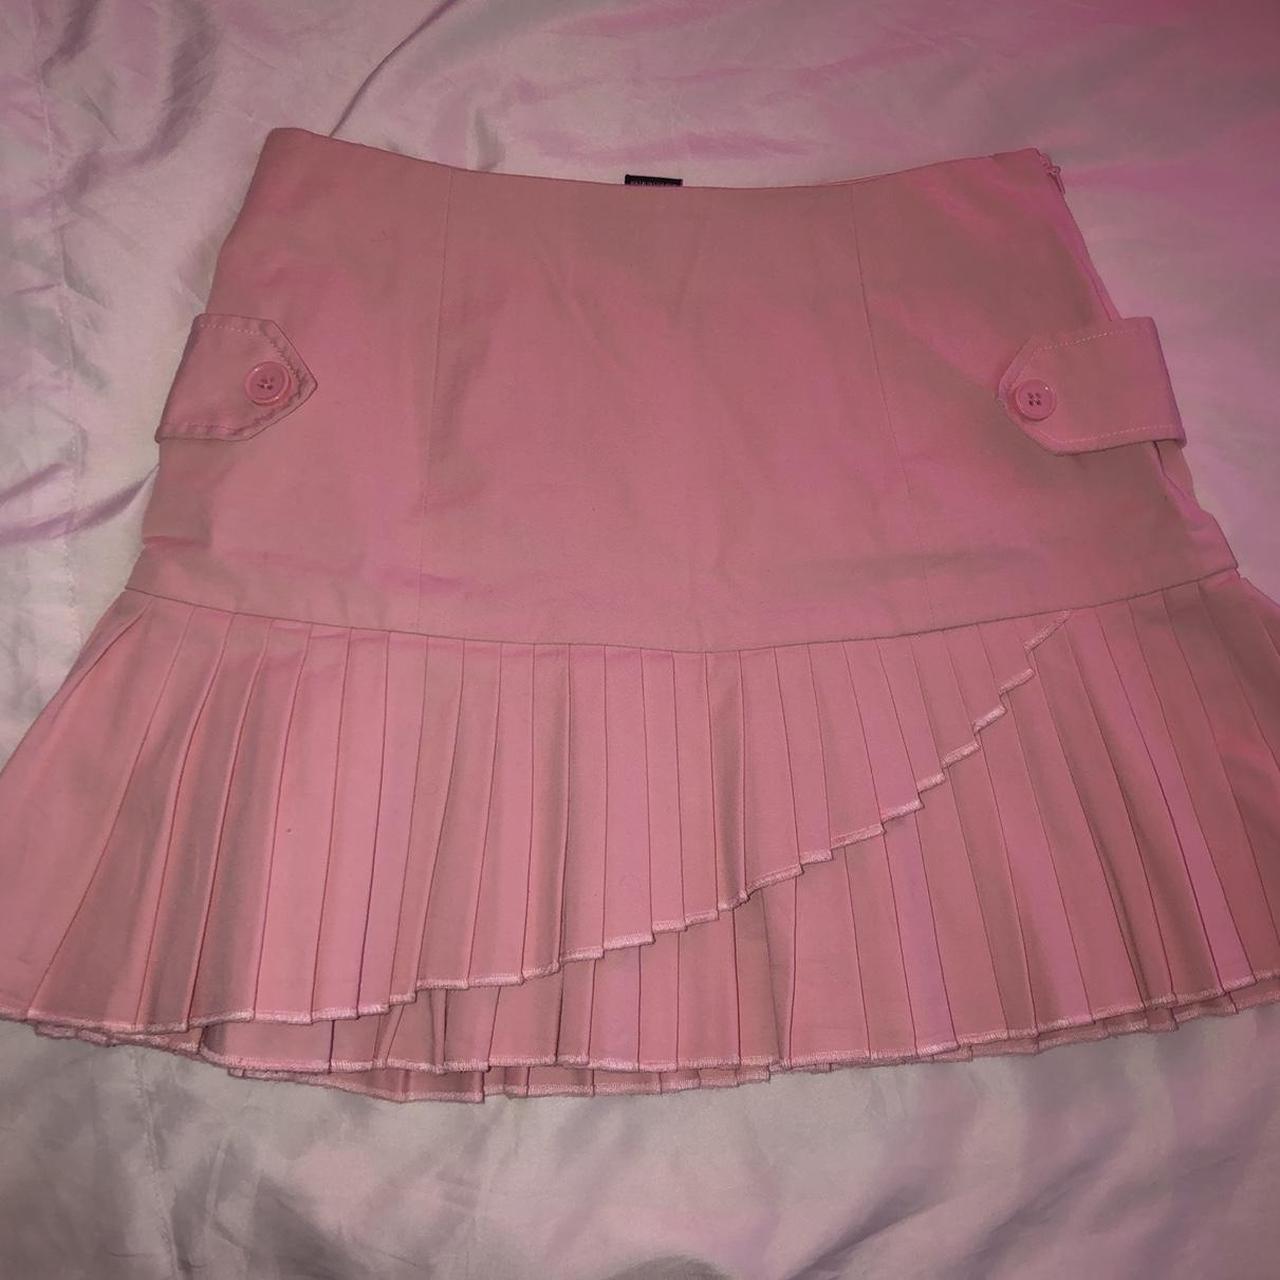 Barbie inspired skirt - Depop